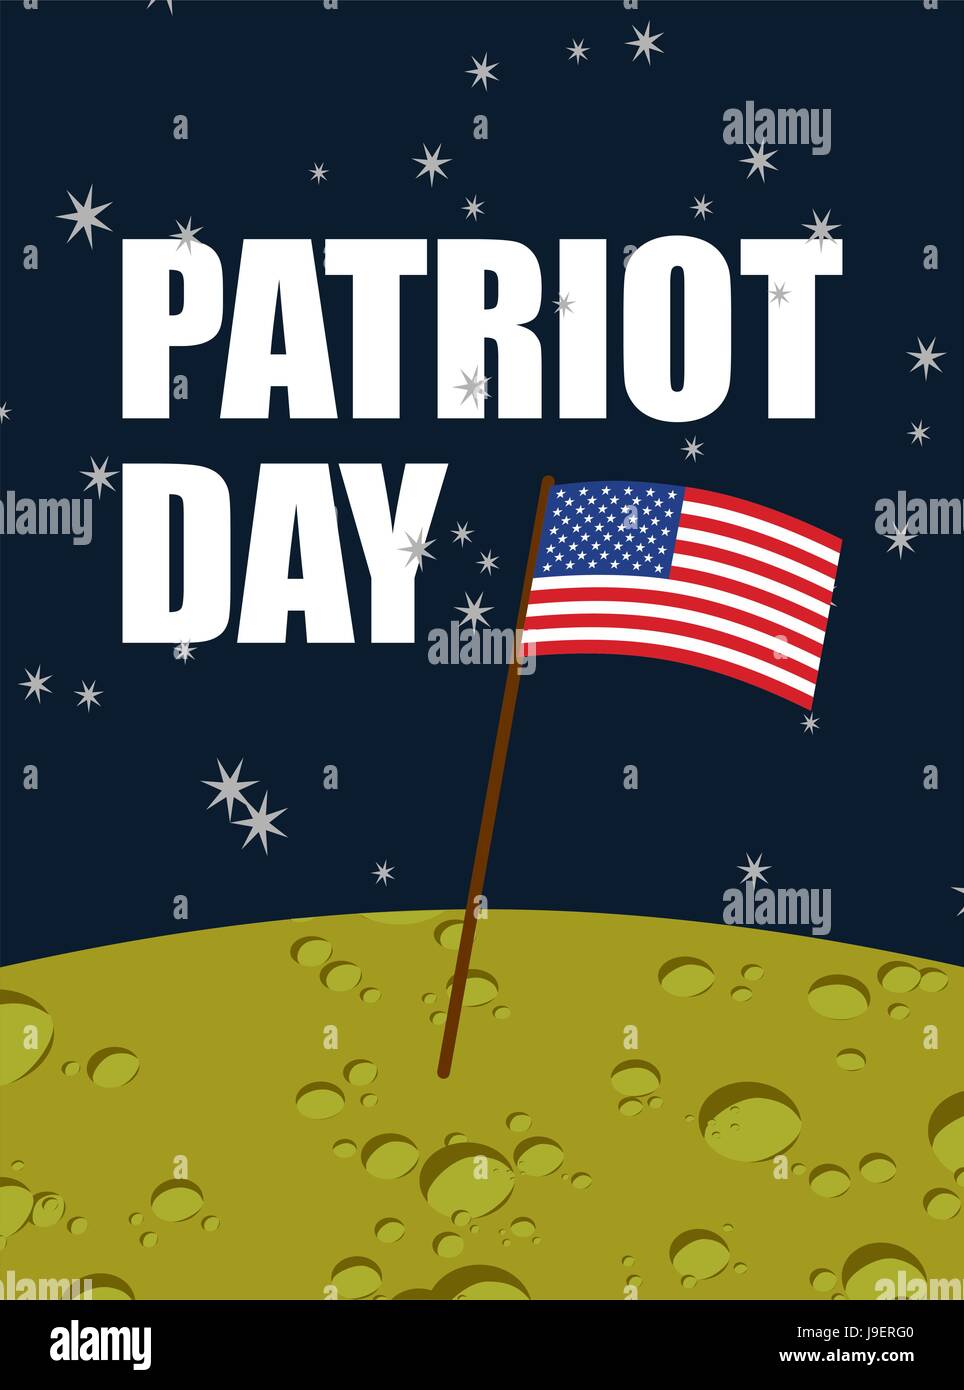 Patriot day. Drapeau américain sur la surface de la lune. USA drapeau jaune sur la planète dans l'espace. Les astronautes américains débarqué pour la première fois sur la lune. Vector illustration pour la na Illustration de Vecteur